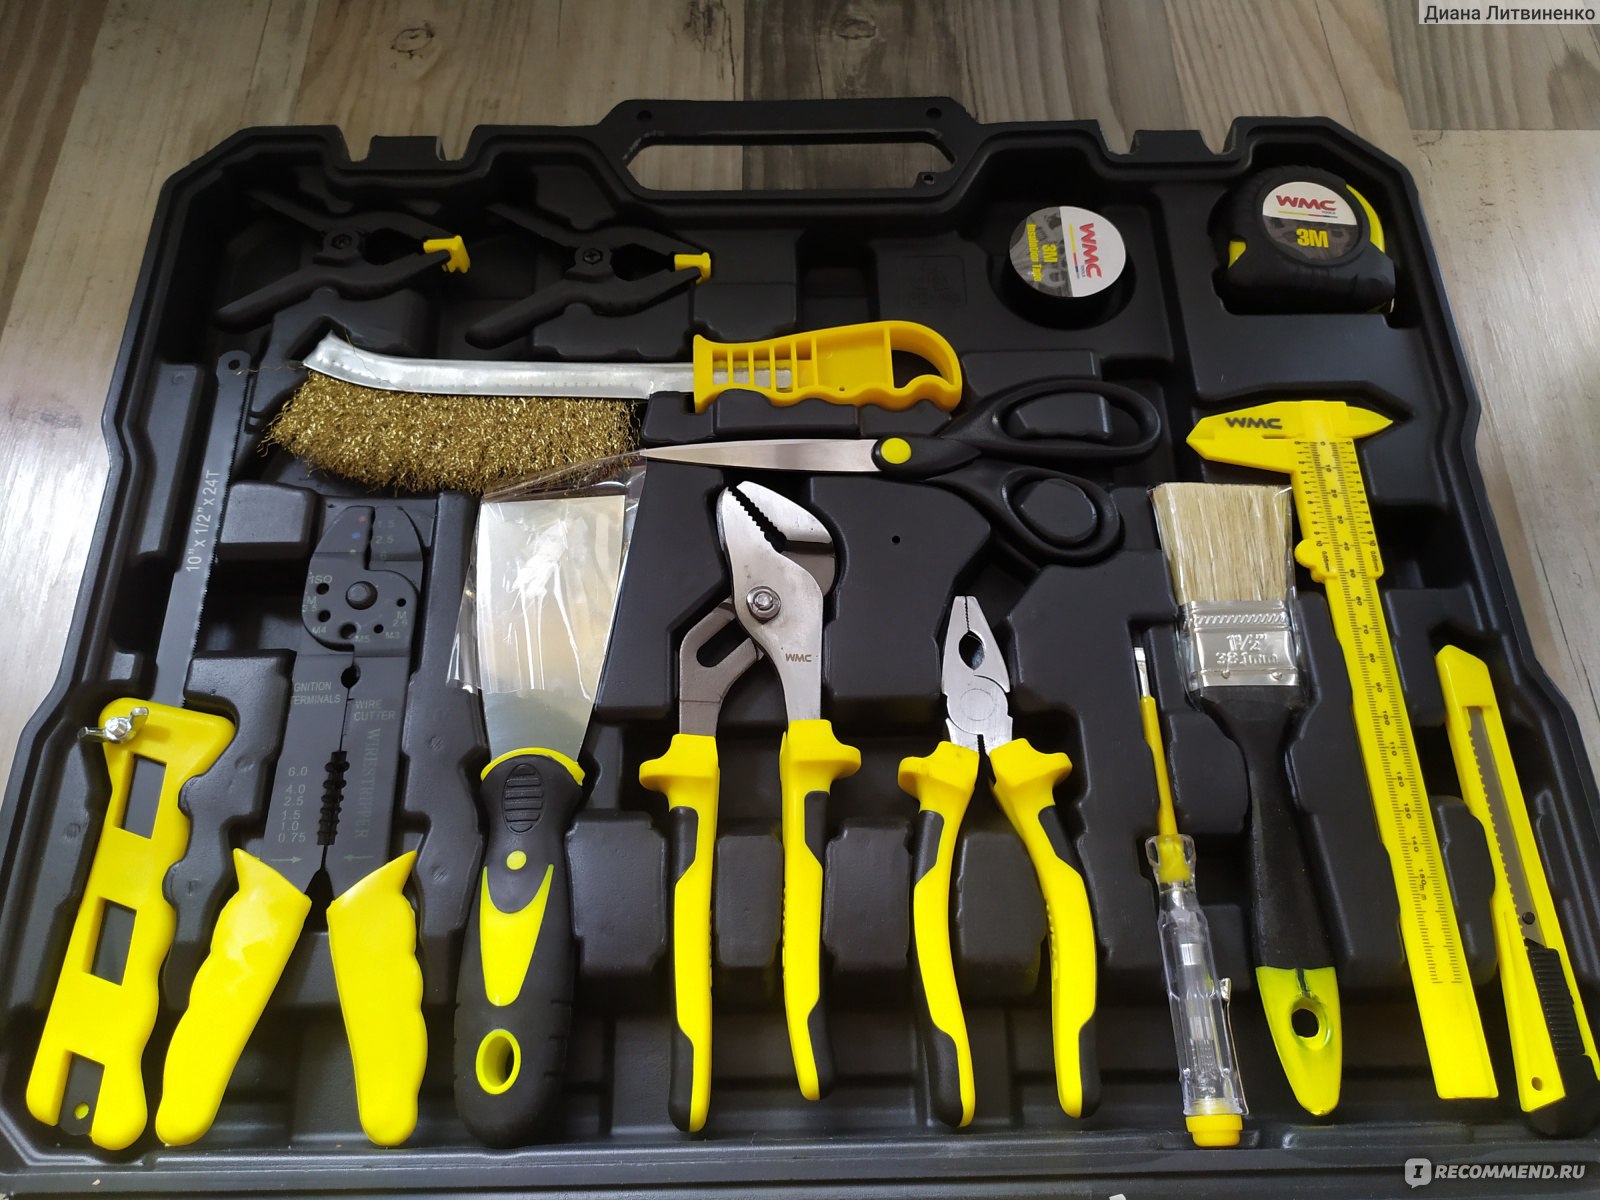 Набор wmc tools. Инструменты. Набор инструментов. Набор Tools. Все инструменты.